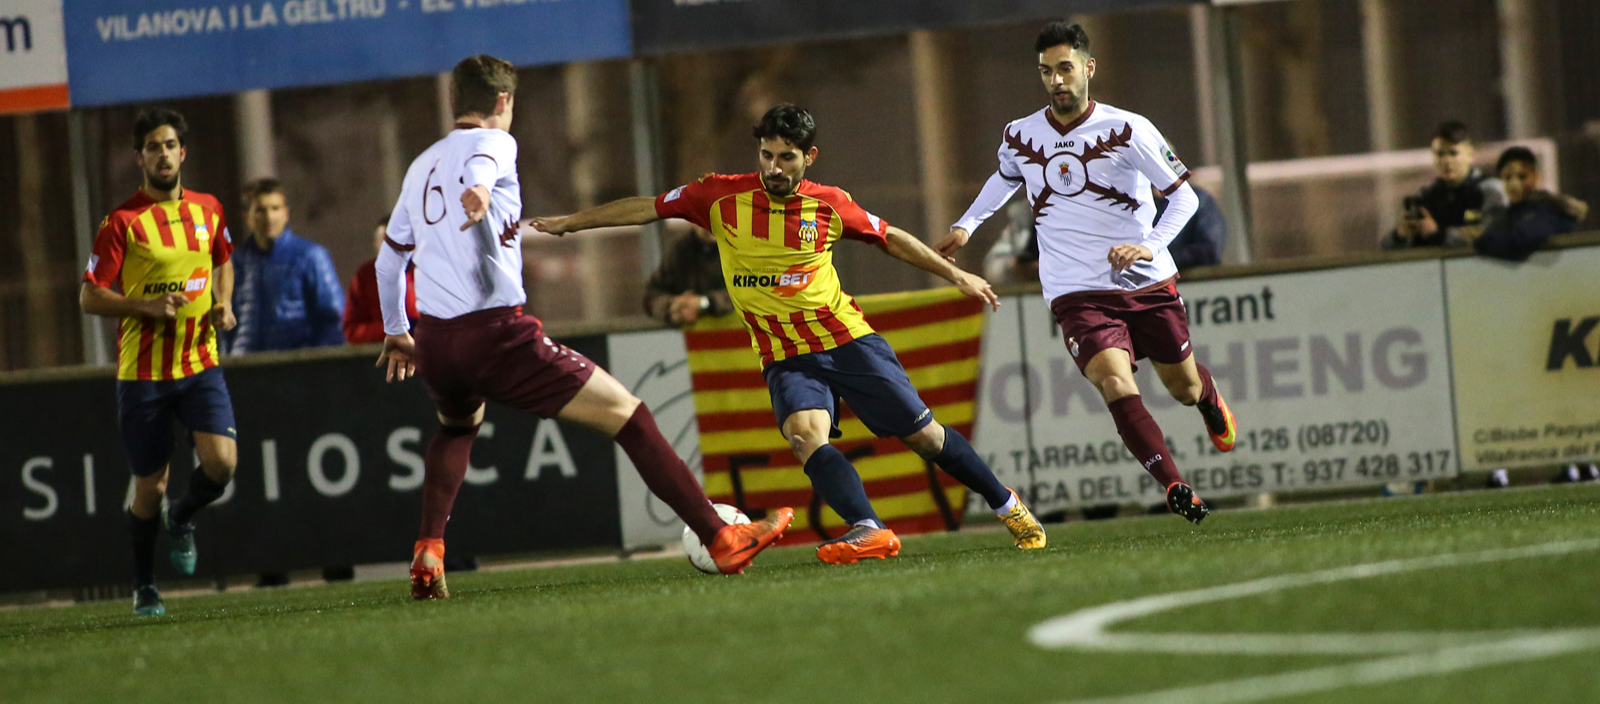 L’Ontinyent, rival del Vilafranca a les semifinals de la Copa RFEF